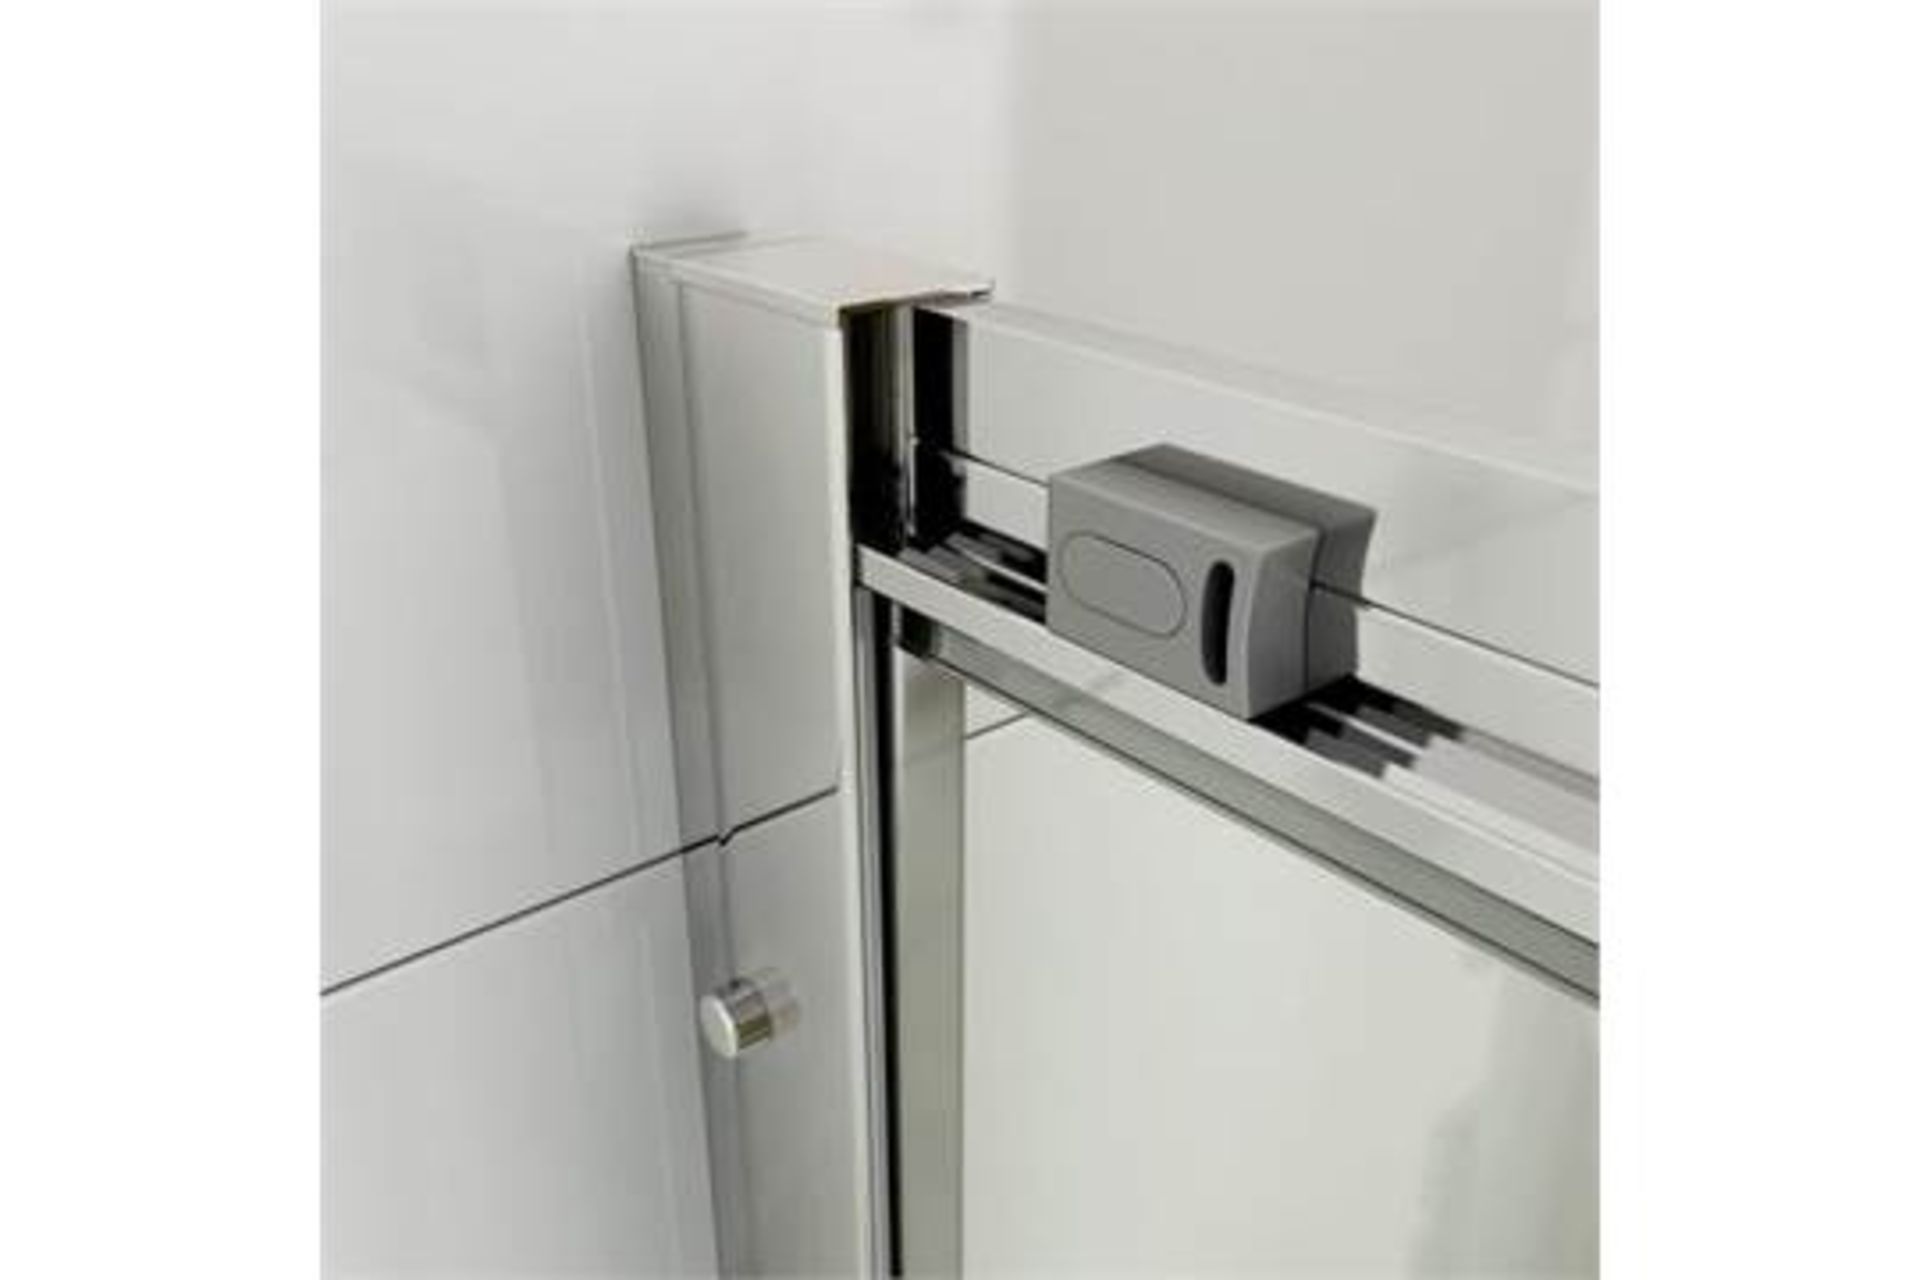 (A16) 760x900mm - 6mm - Elements Offset Quadrant Shower Enclosure. RRP £323.99. Featuring a gentle - Bild 3 aus 5